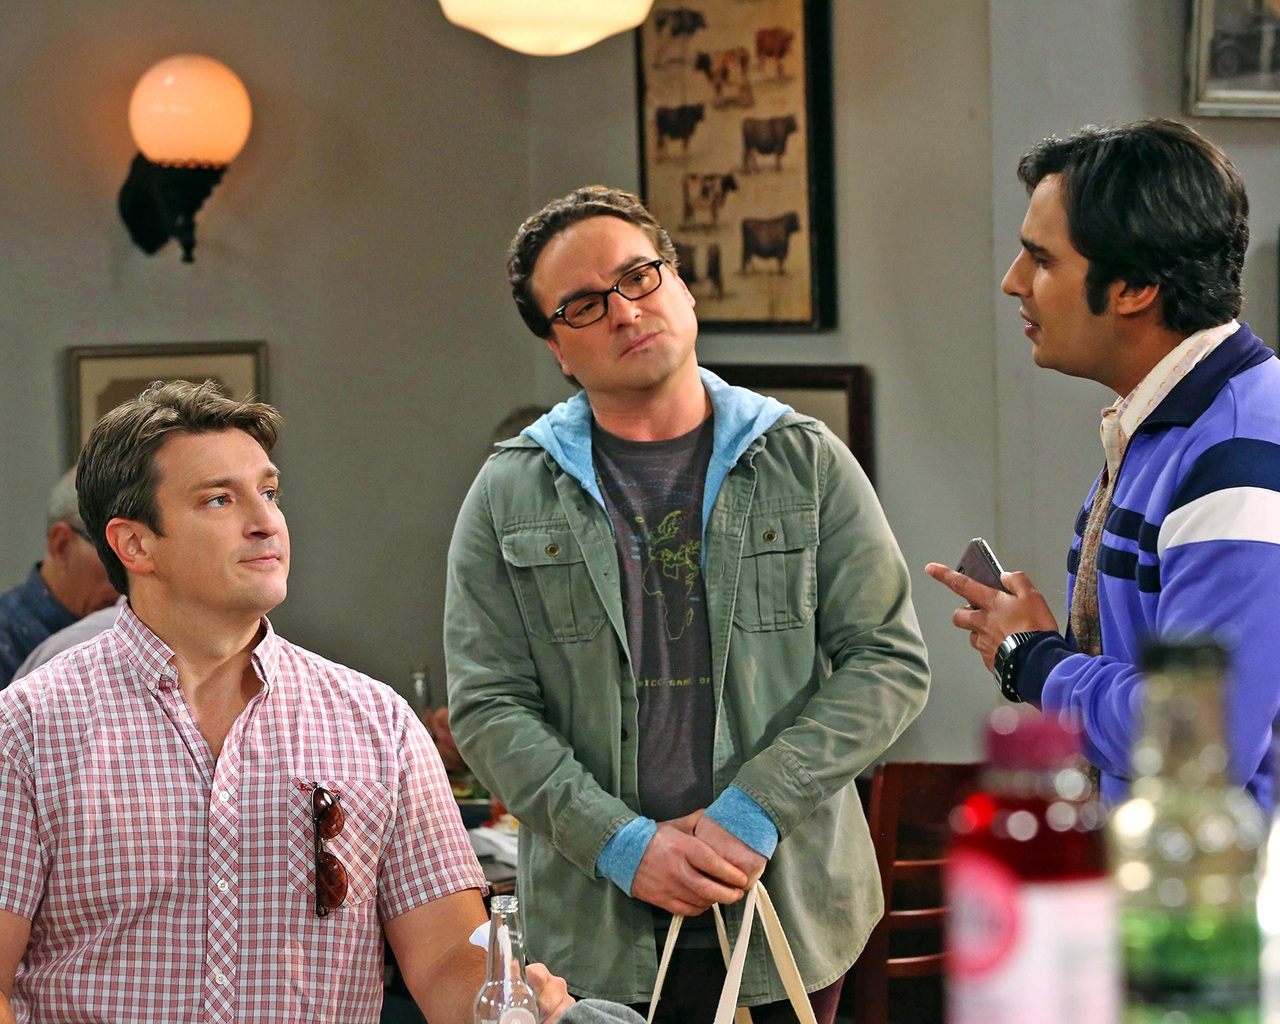 The Big Bang Theory Leonard, Raj and Nathan for 1280 x 1024 resolution